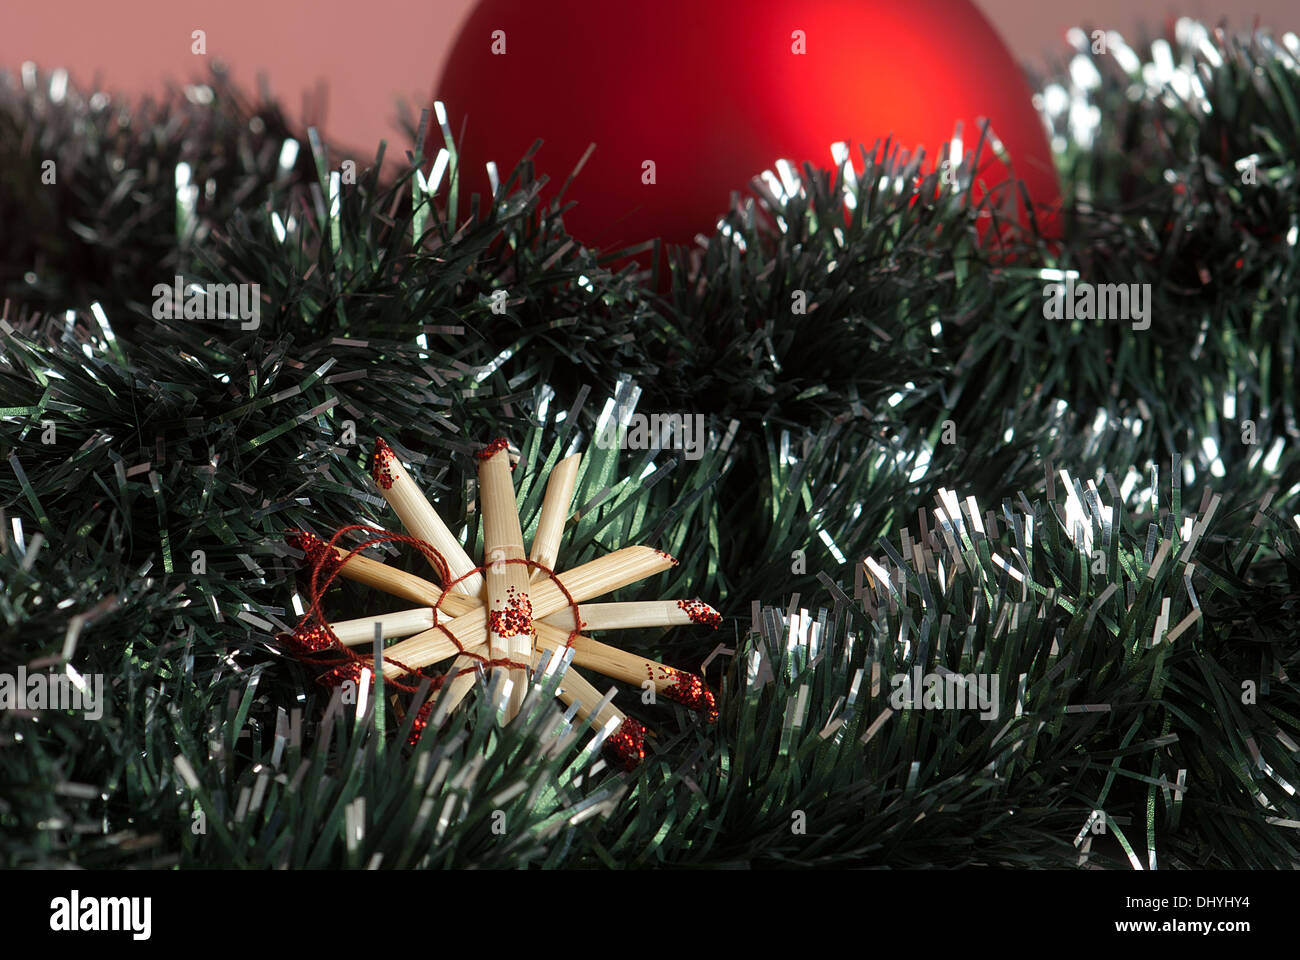 La décoration traditionnelle de Noël avec étoiles de paille Banque D'Images